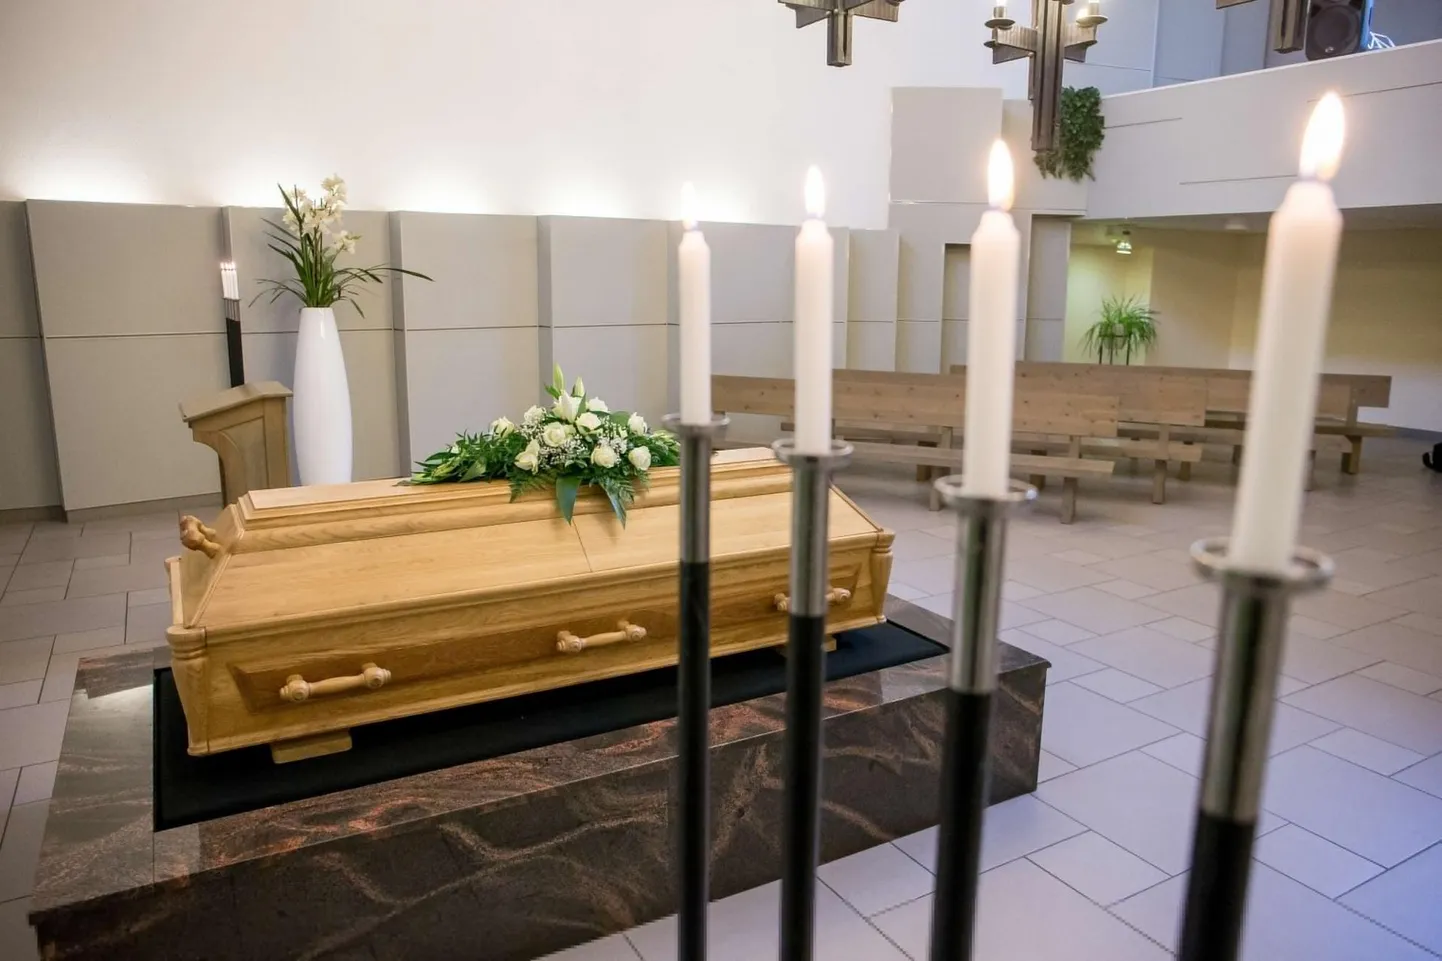 Tallinna krematooriumis on kasutusel ka rendikirstud, kuid teenuse tellija peab sellisest teenusest üheselt aru saama.